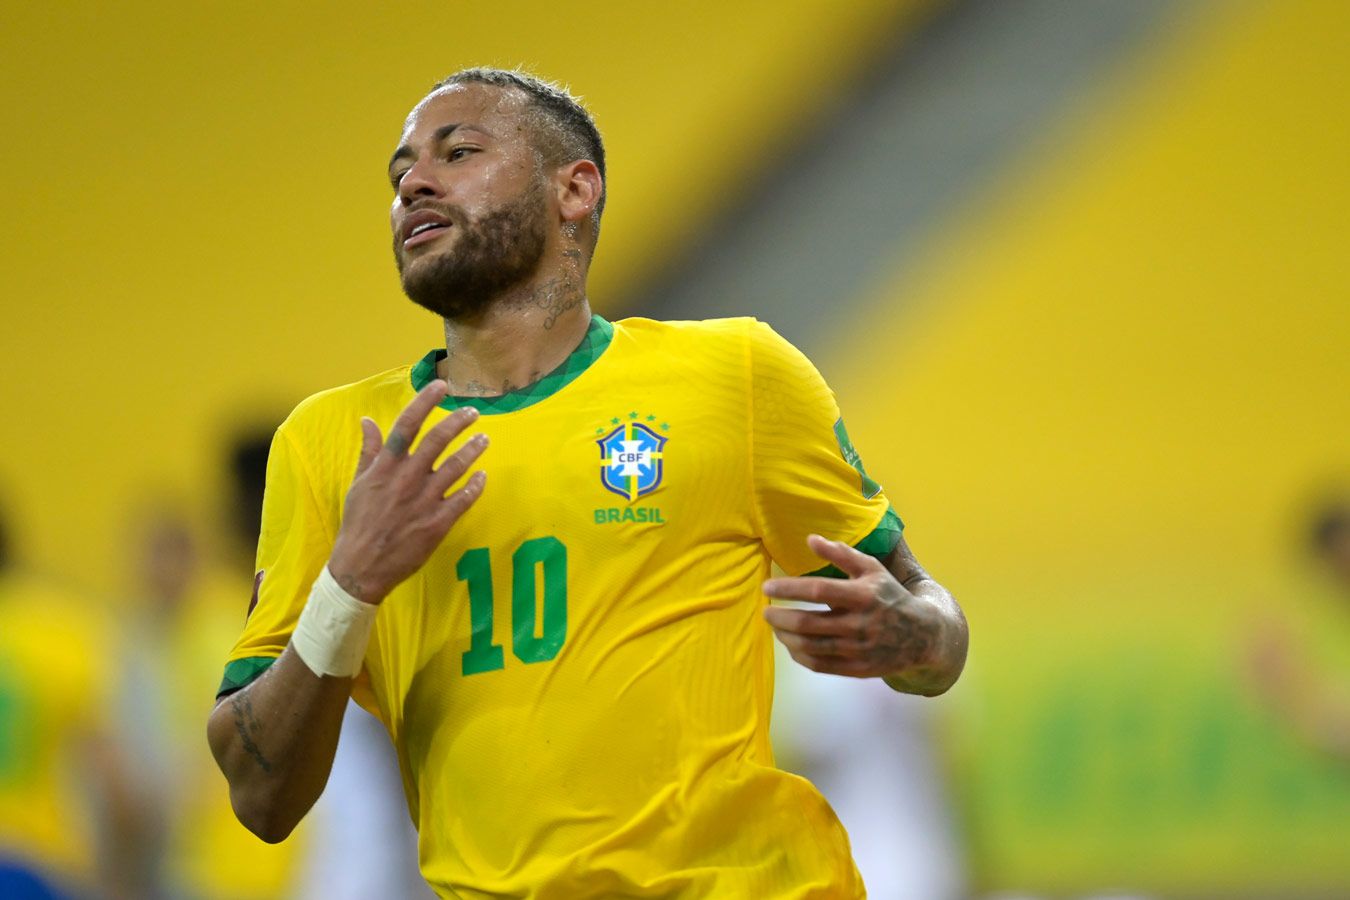 Sport: Алвес вызван в состав Бразилии на ЧМ, чтобы присматривать за Неймаром